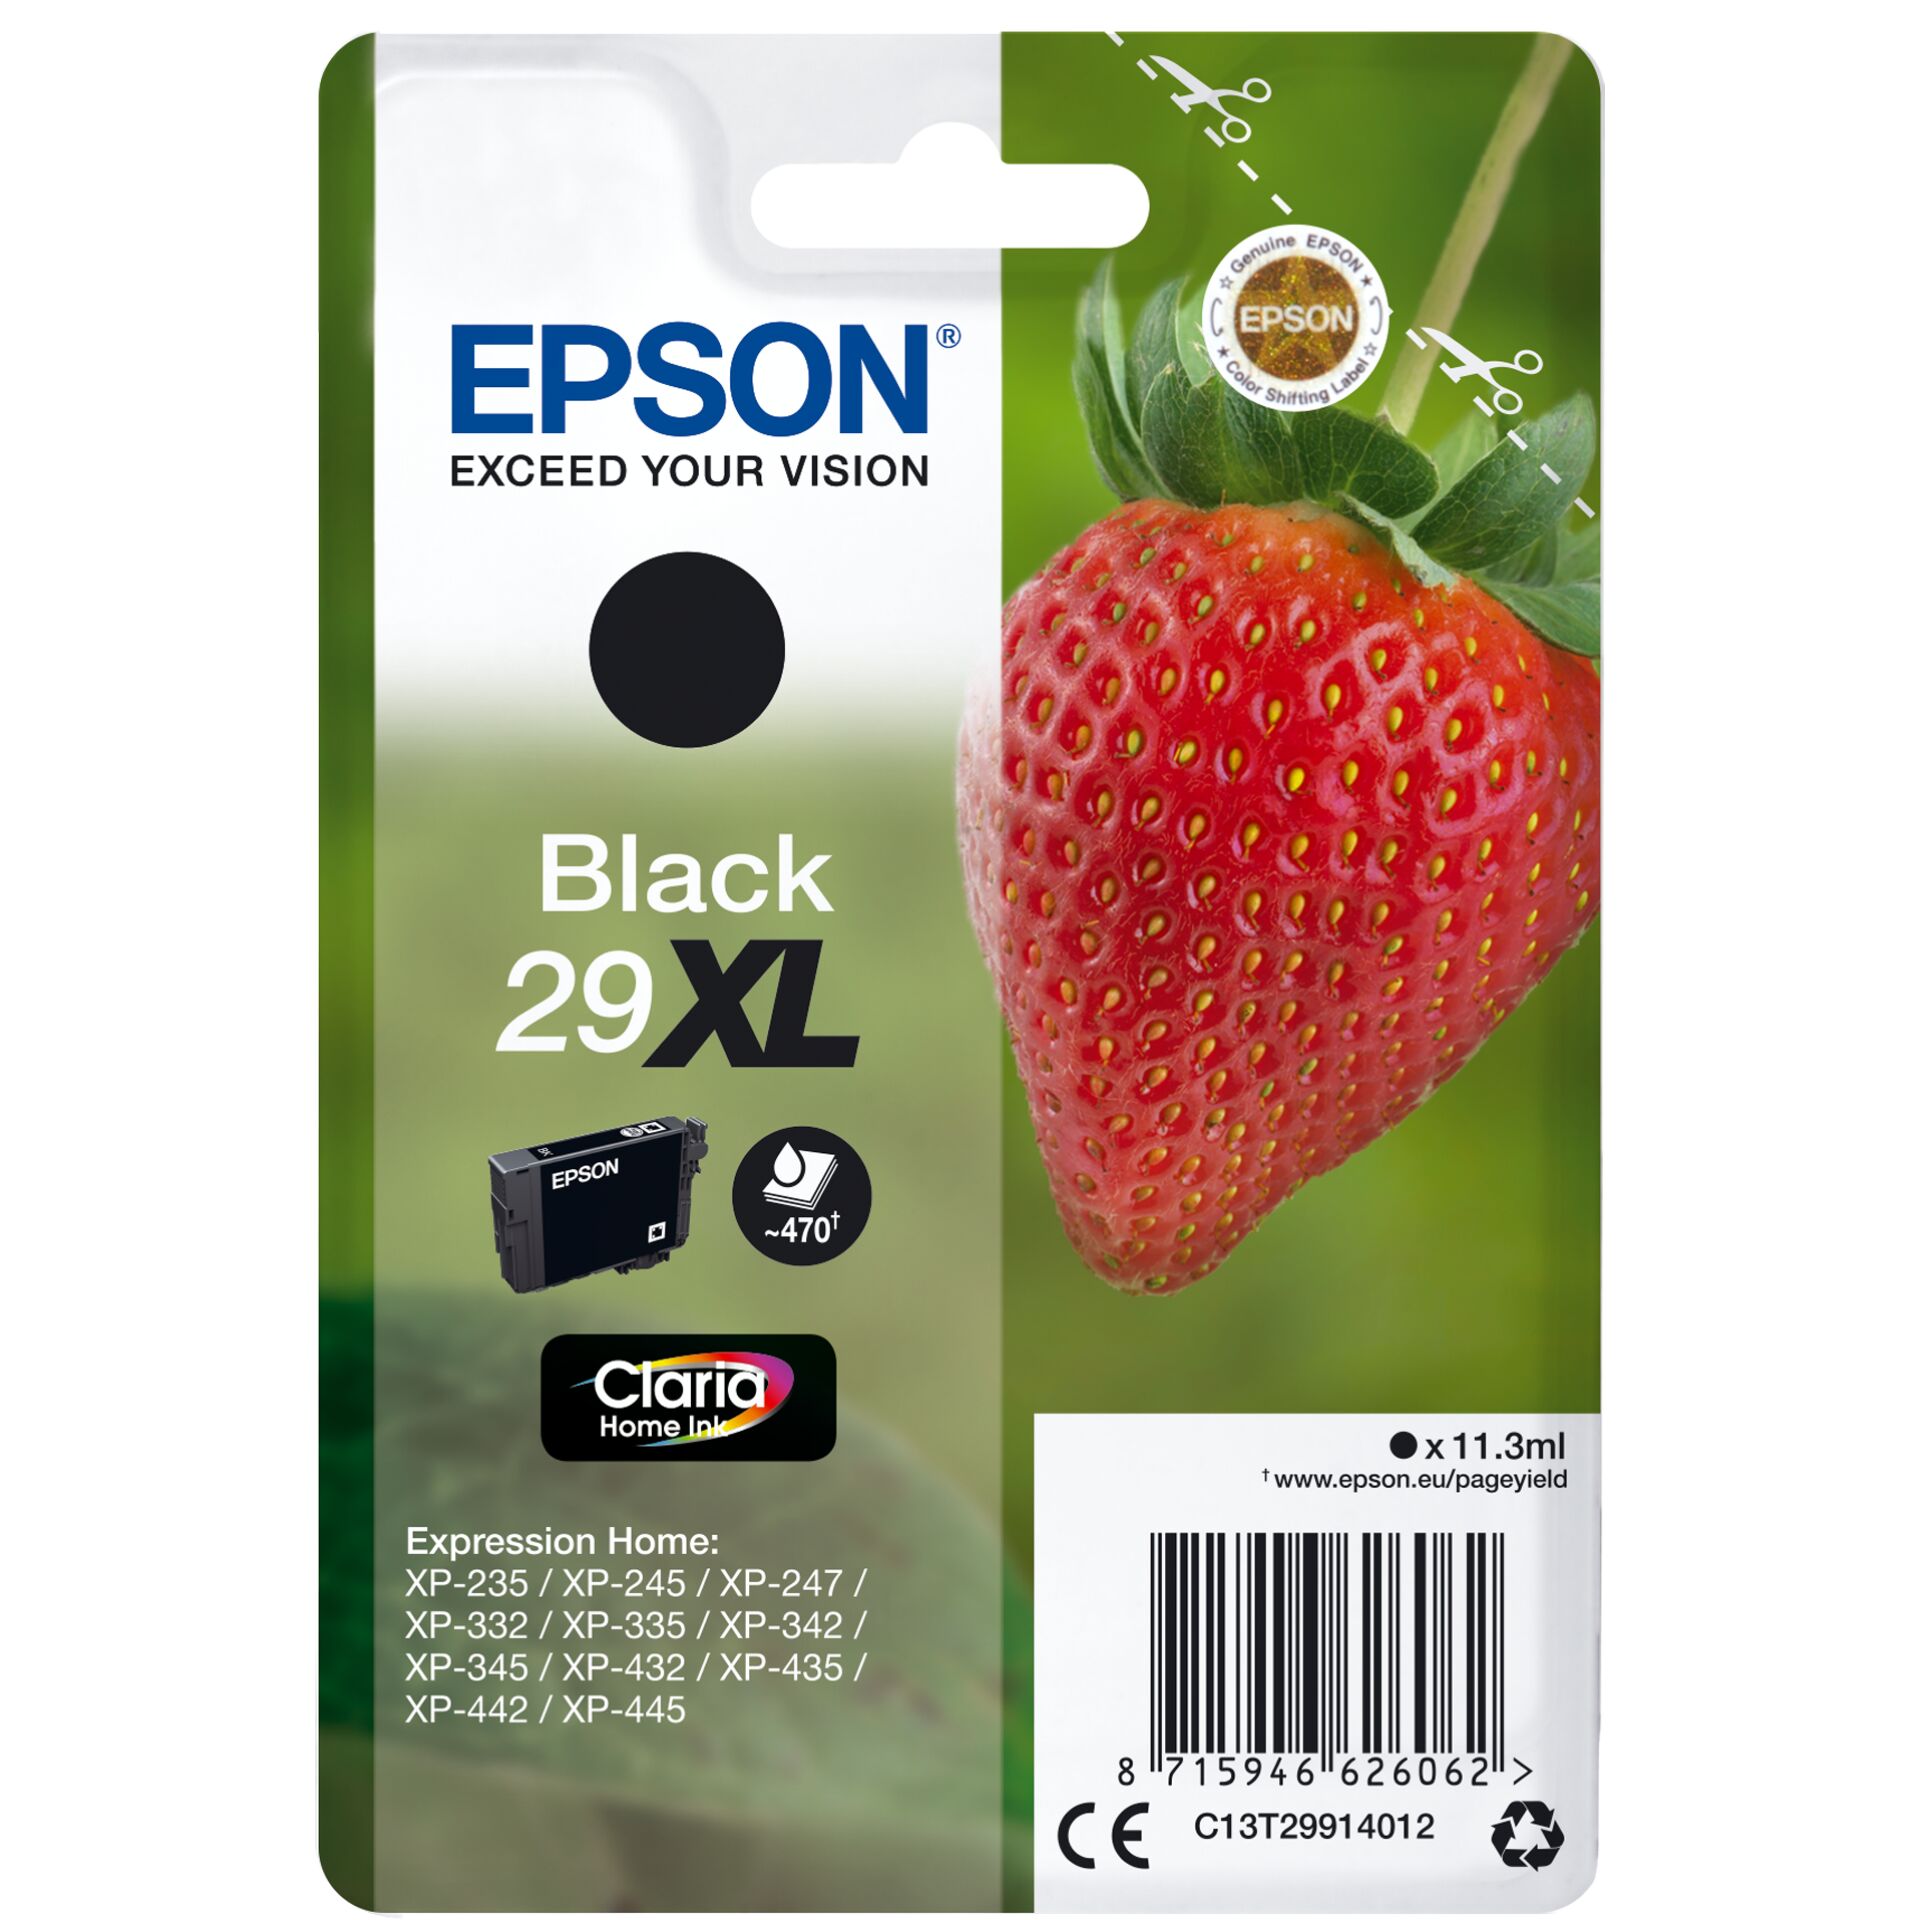 Epson Tinte 29XL schwarz, 11.3ml 